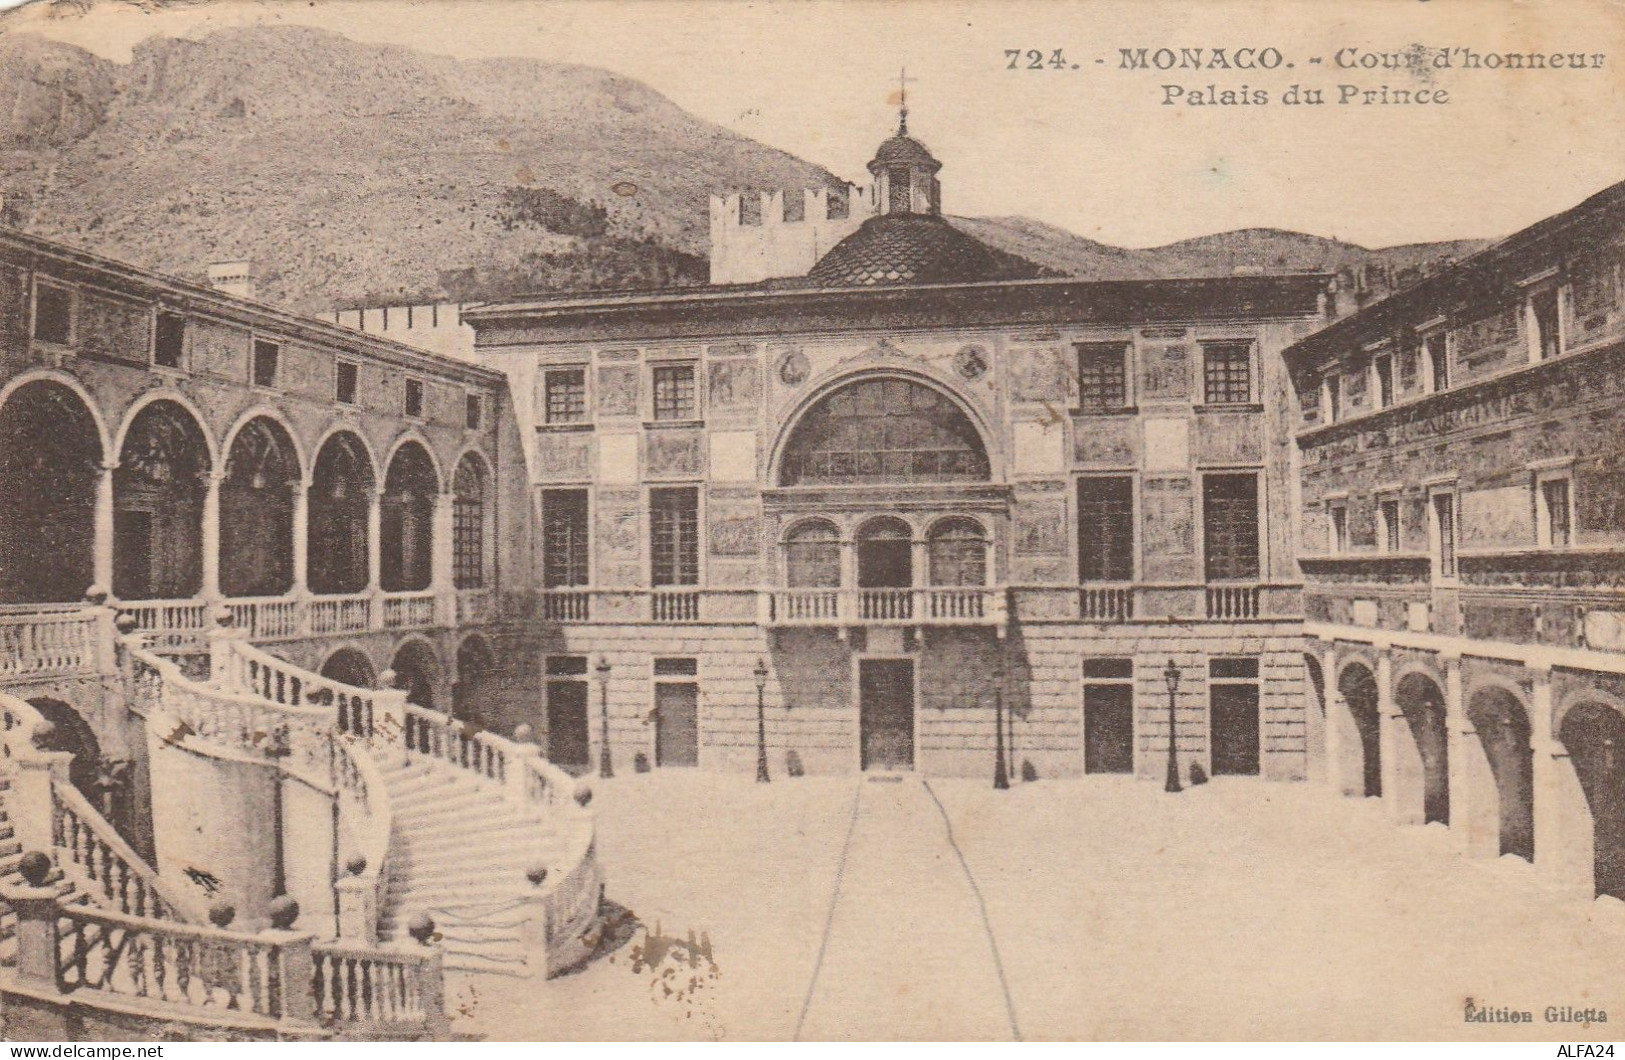 CARTOLINA 1924 MONTECARLO PALAZZO DEL PRINCIPE MONACO (LX371 - Covers & Documents